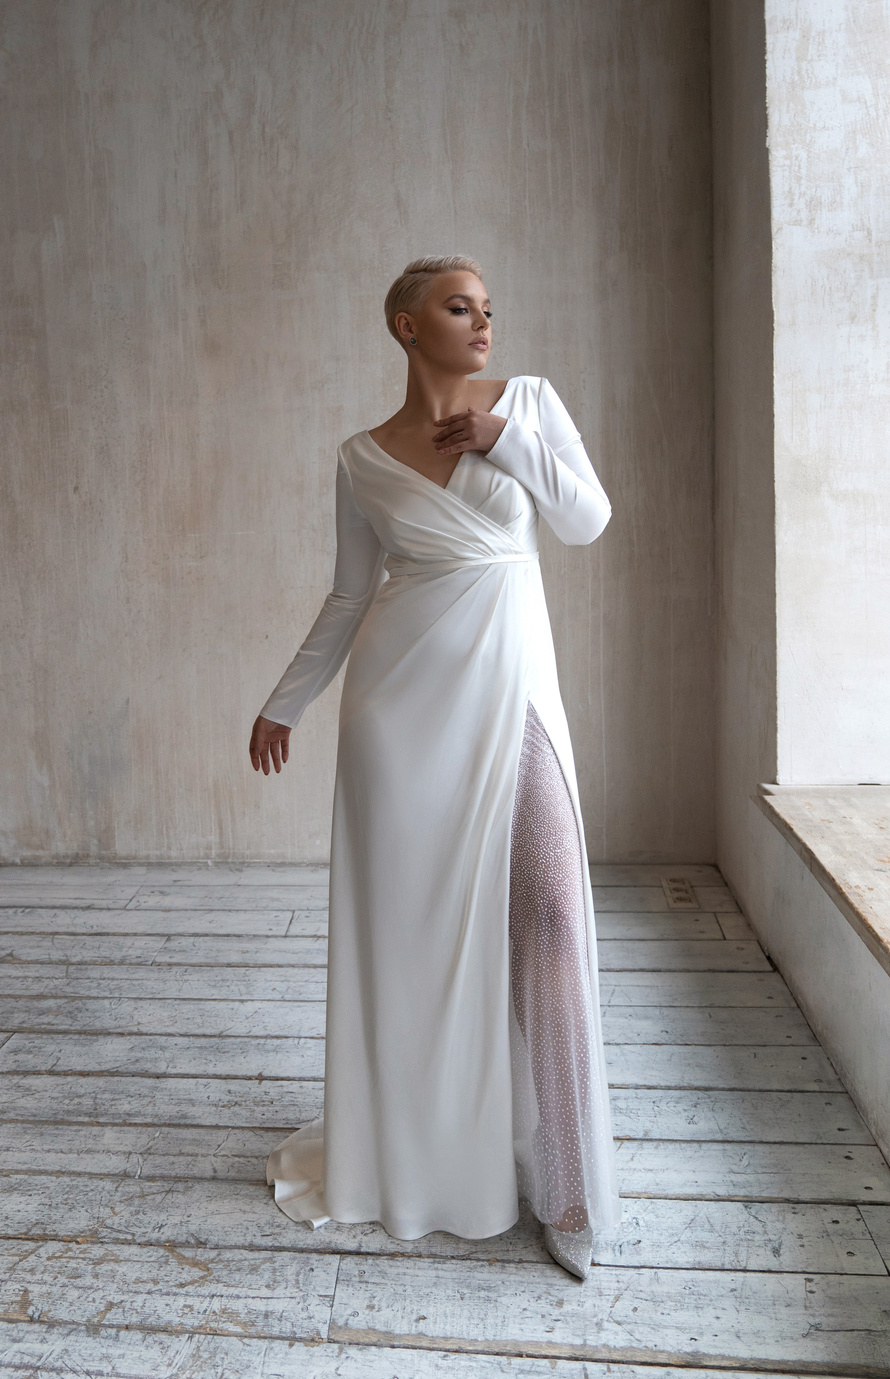 Свадебное платье «Оруэл плюс сайз» Марта — купить в Самаре платье Оруэл из коллекции 2021 года